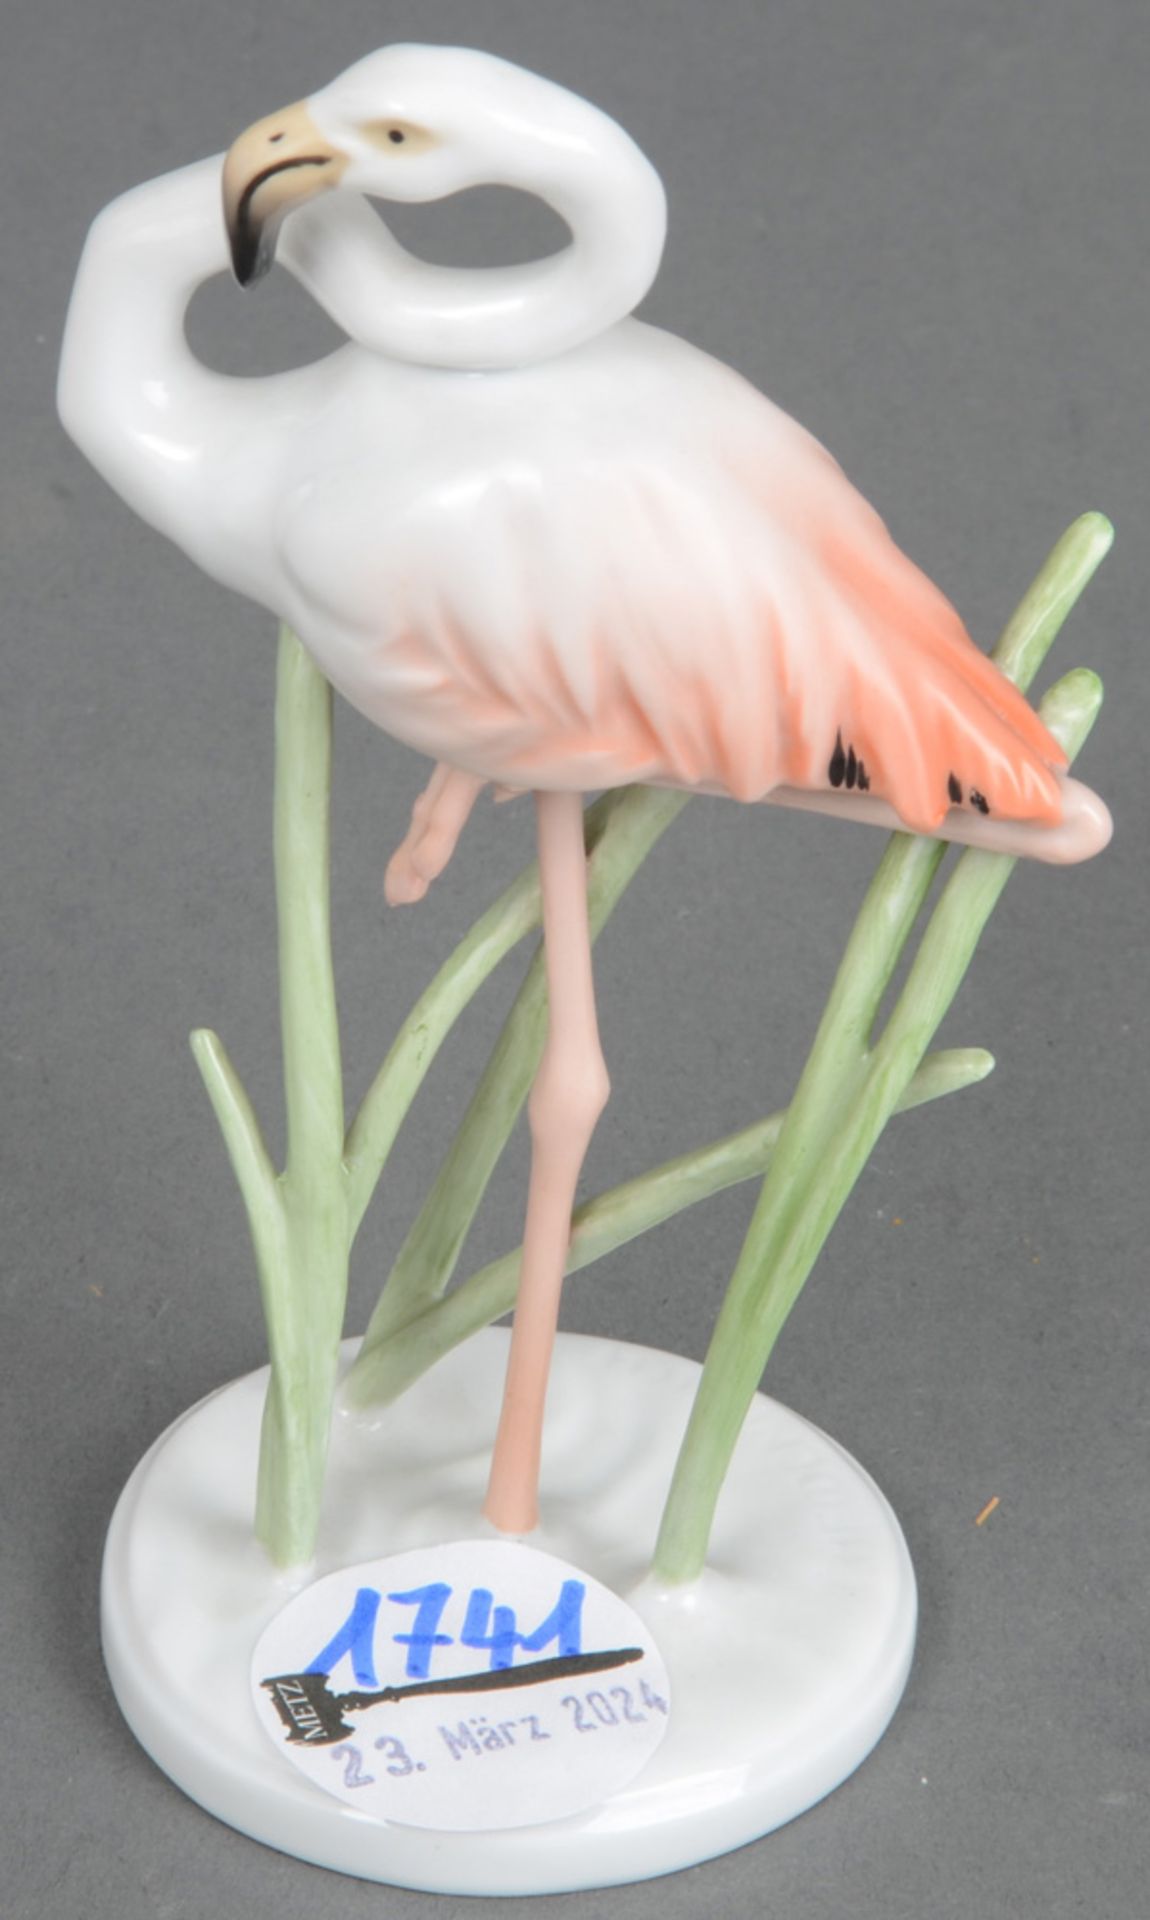 Flamingo. Rosenthal 20. Jh. Porzellan, naturalistisch modelliert und staffiert; am Boden grüne Stemp